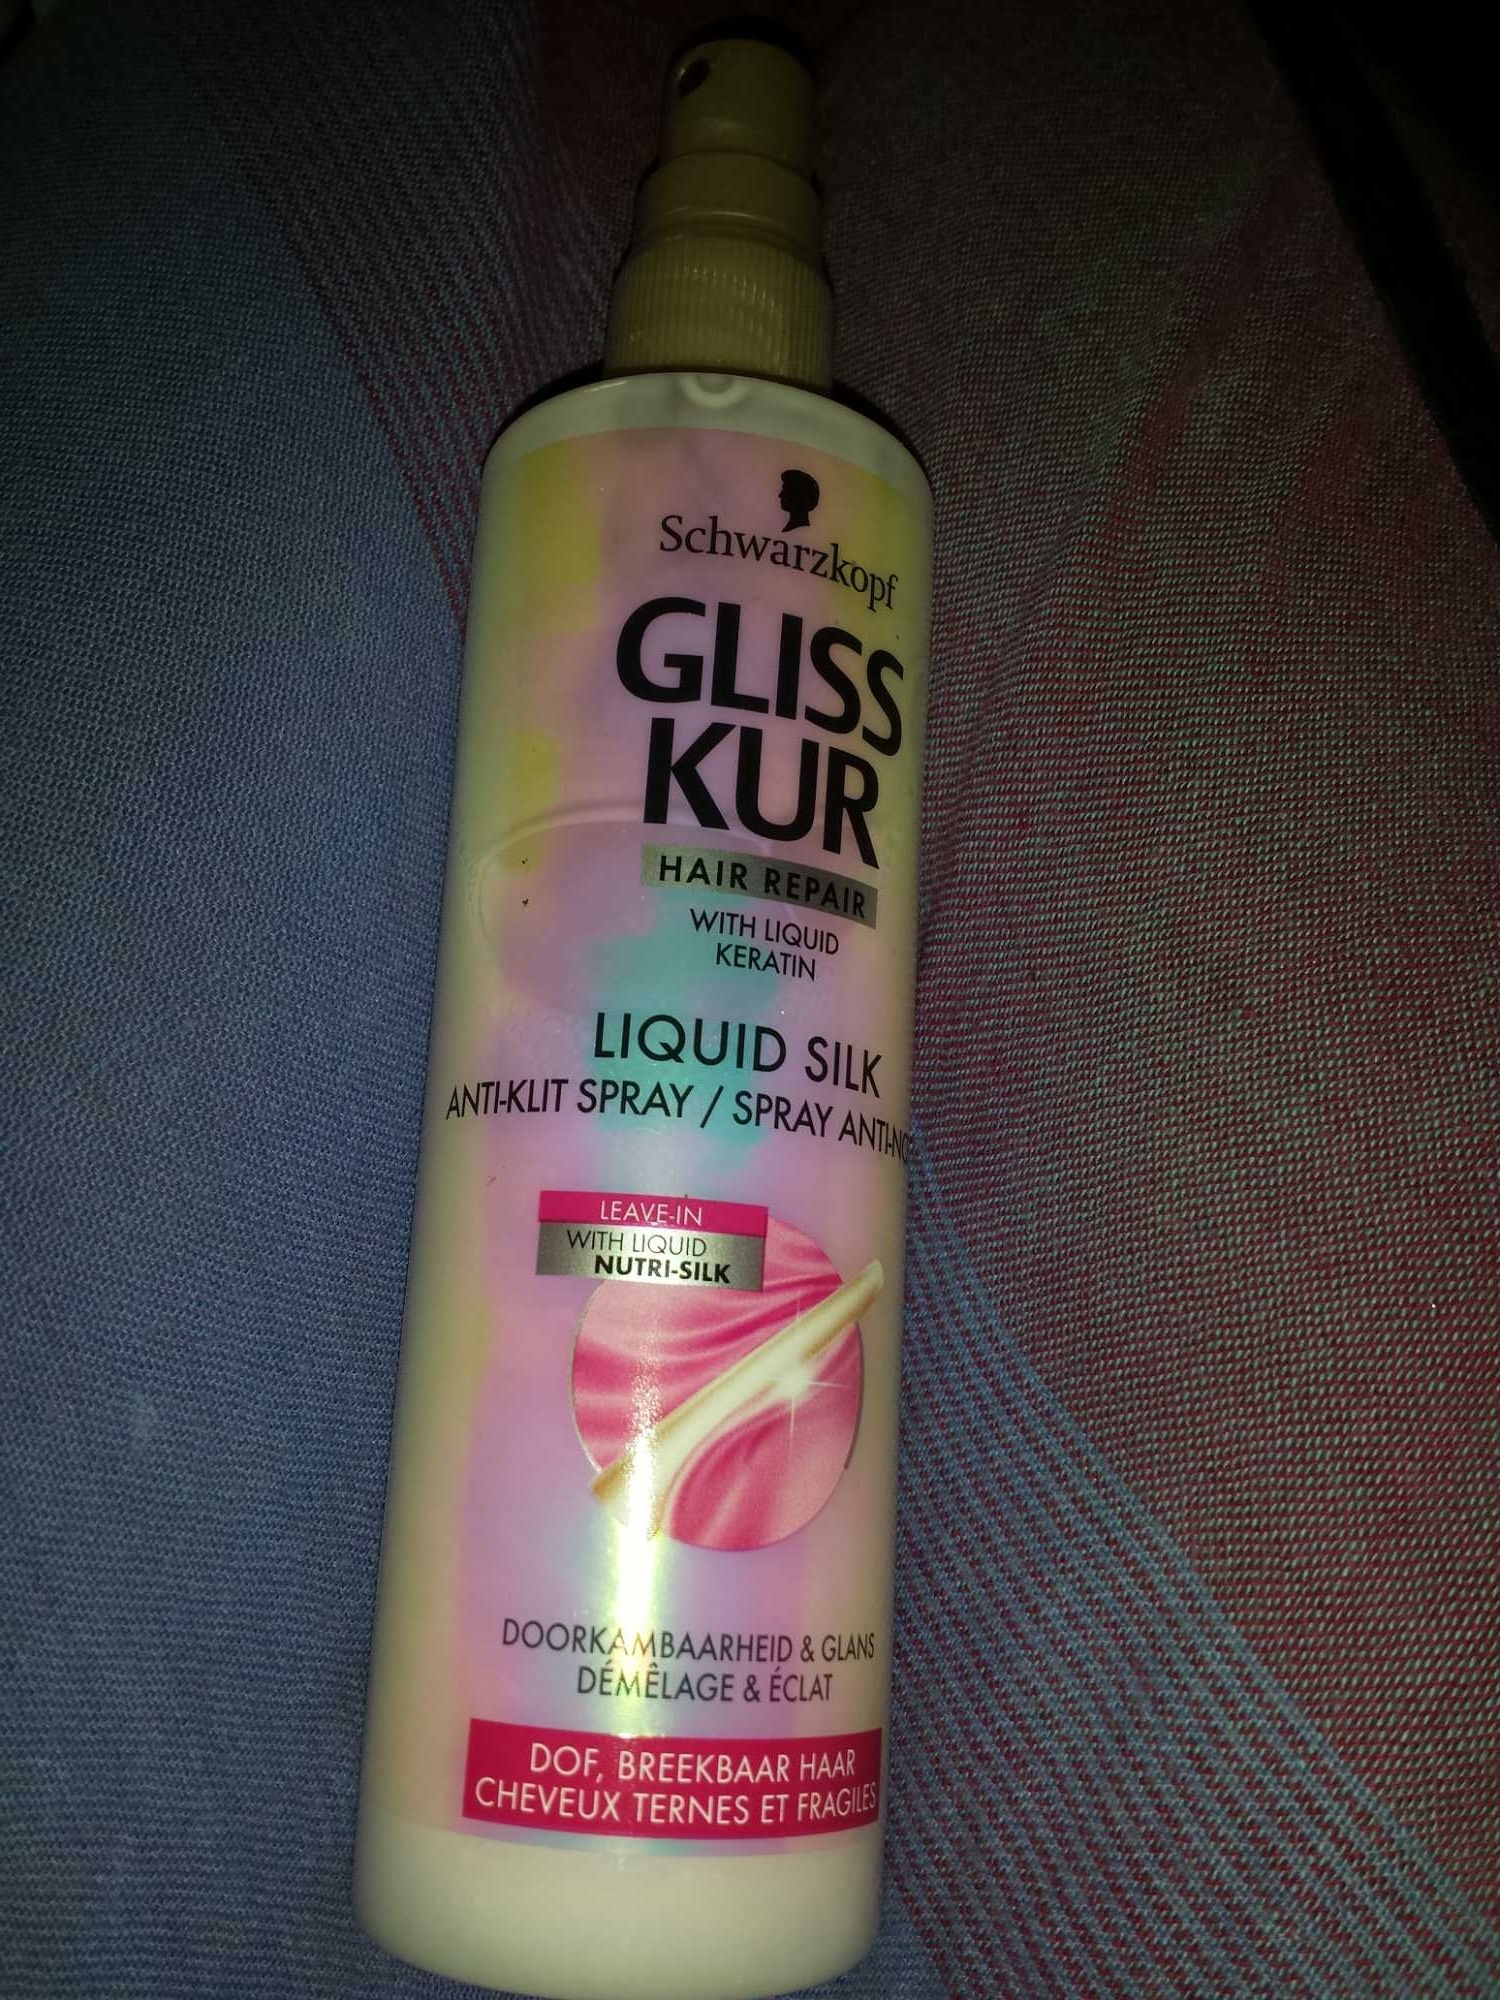 Liquid Silk - Produit - en